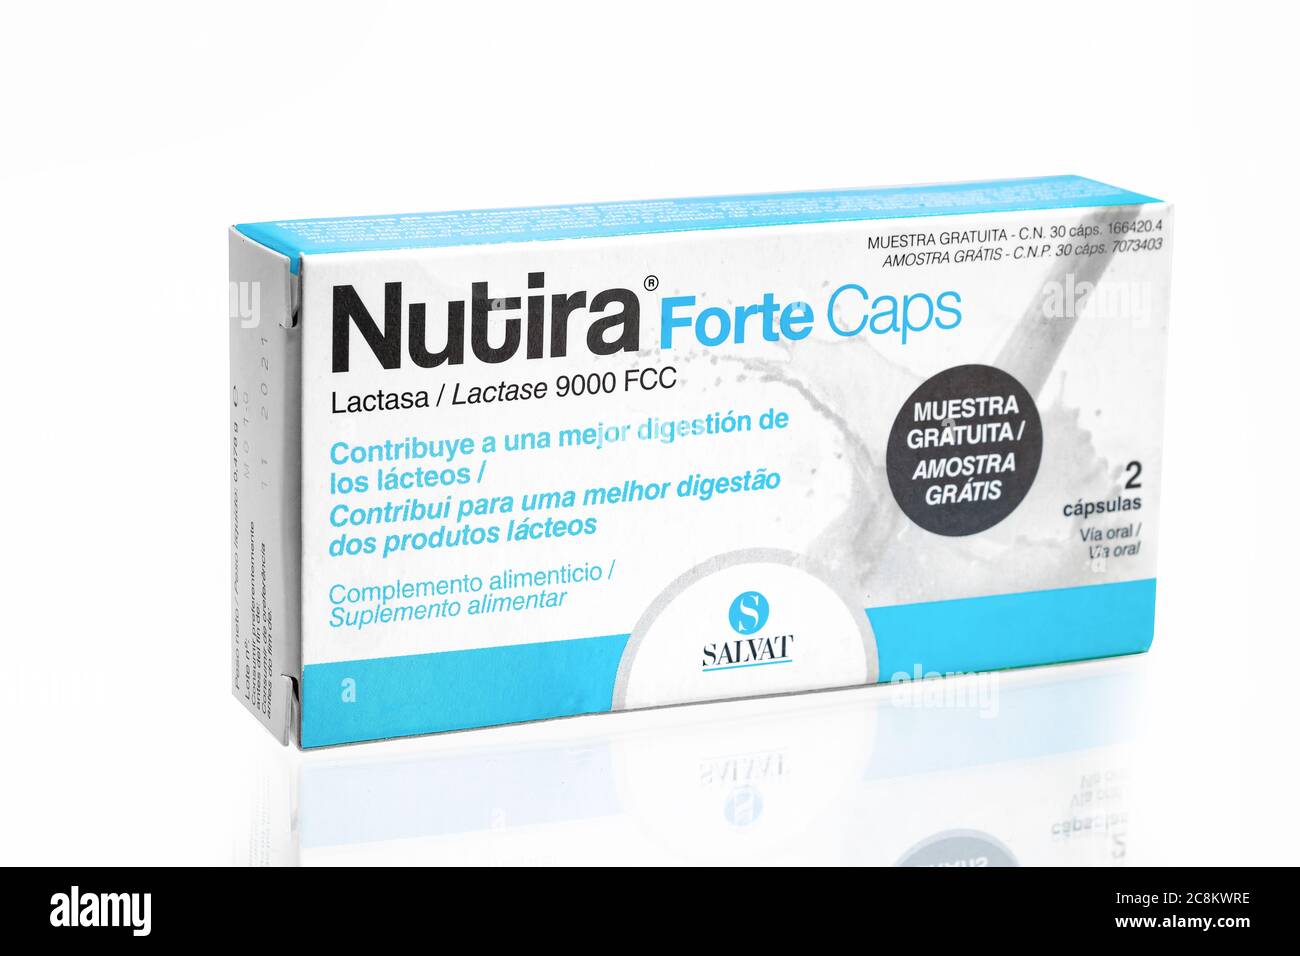 Huelva, Spanien - 23. Juli 2020: Eine Schachtel Salvat Nutira Forte. Nutira Forte Kapseln helfen, Laktose zu brechen und Beschwerden zu verhindern. Stockfoto